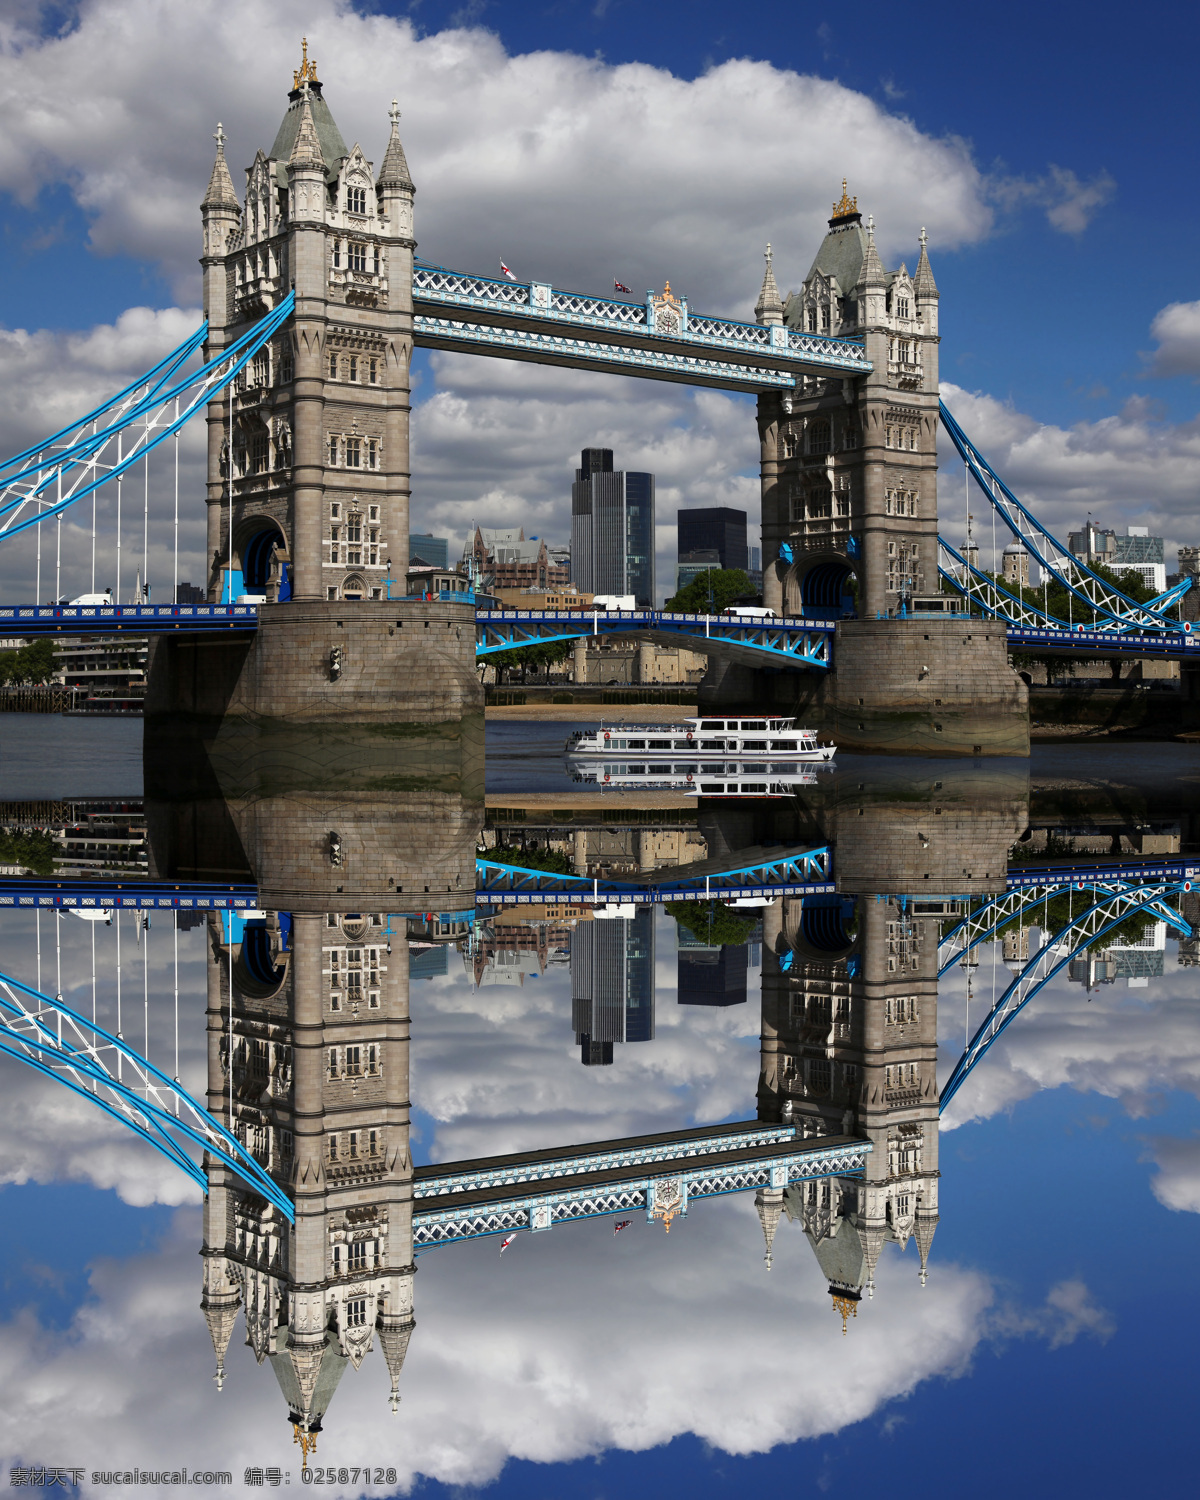 蓝天 下 伦敦 塔桥 白云 天空 伦敦塔桥 伦敦风景 城市风景 英国旅游景点 建筑设计 环境家居